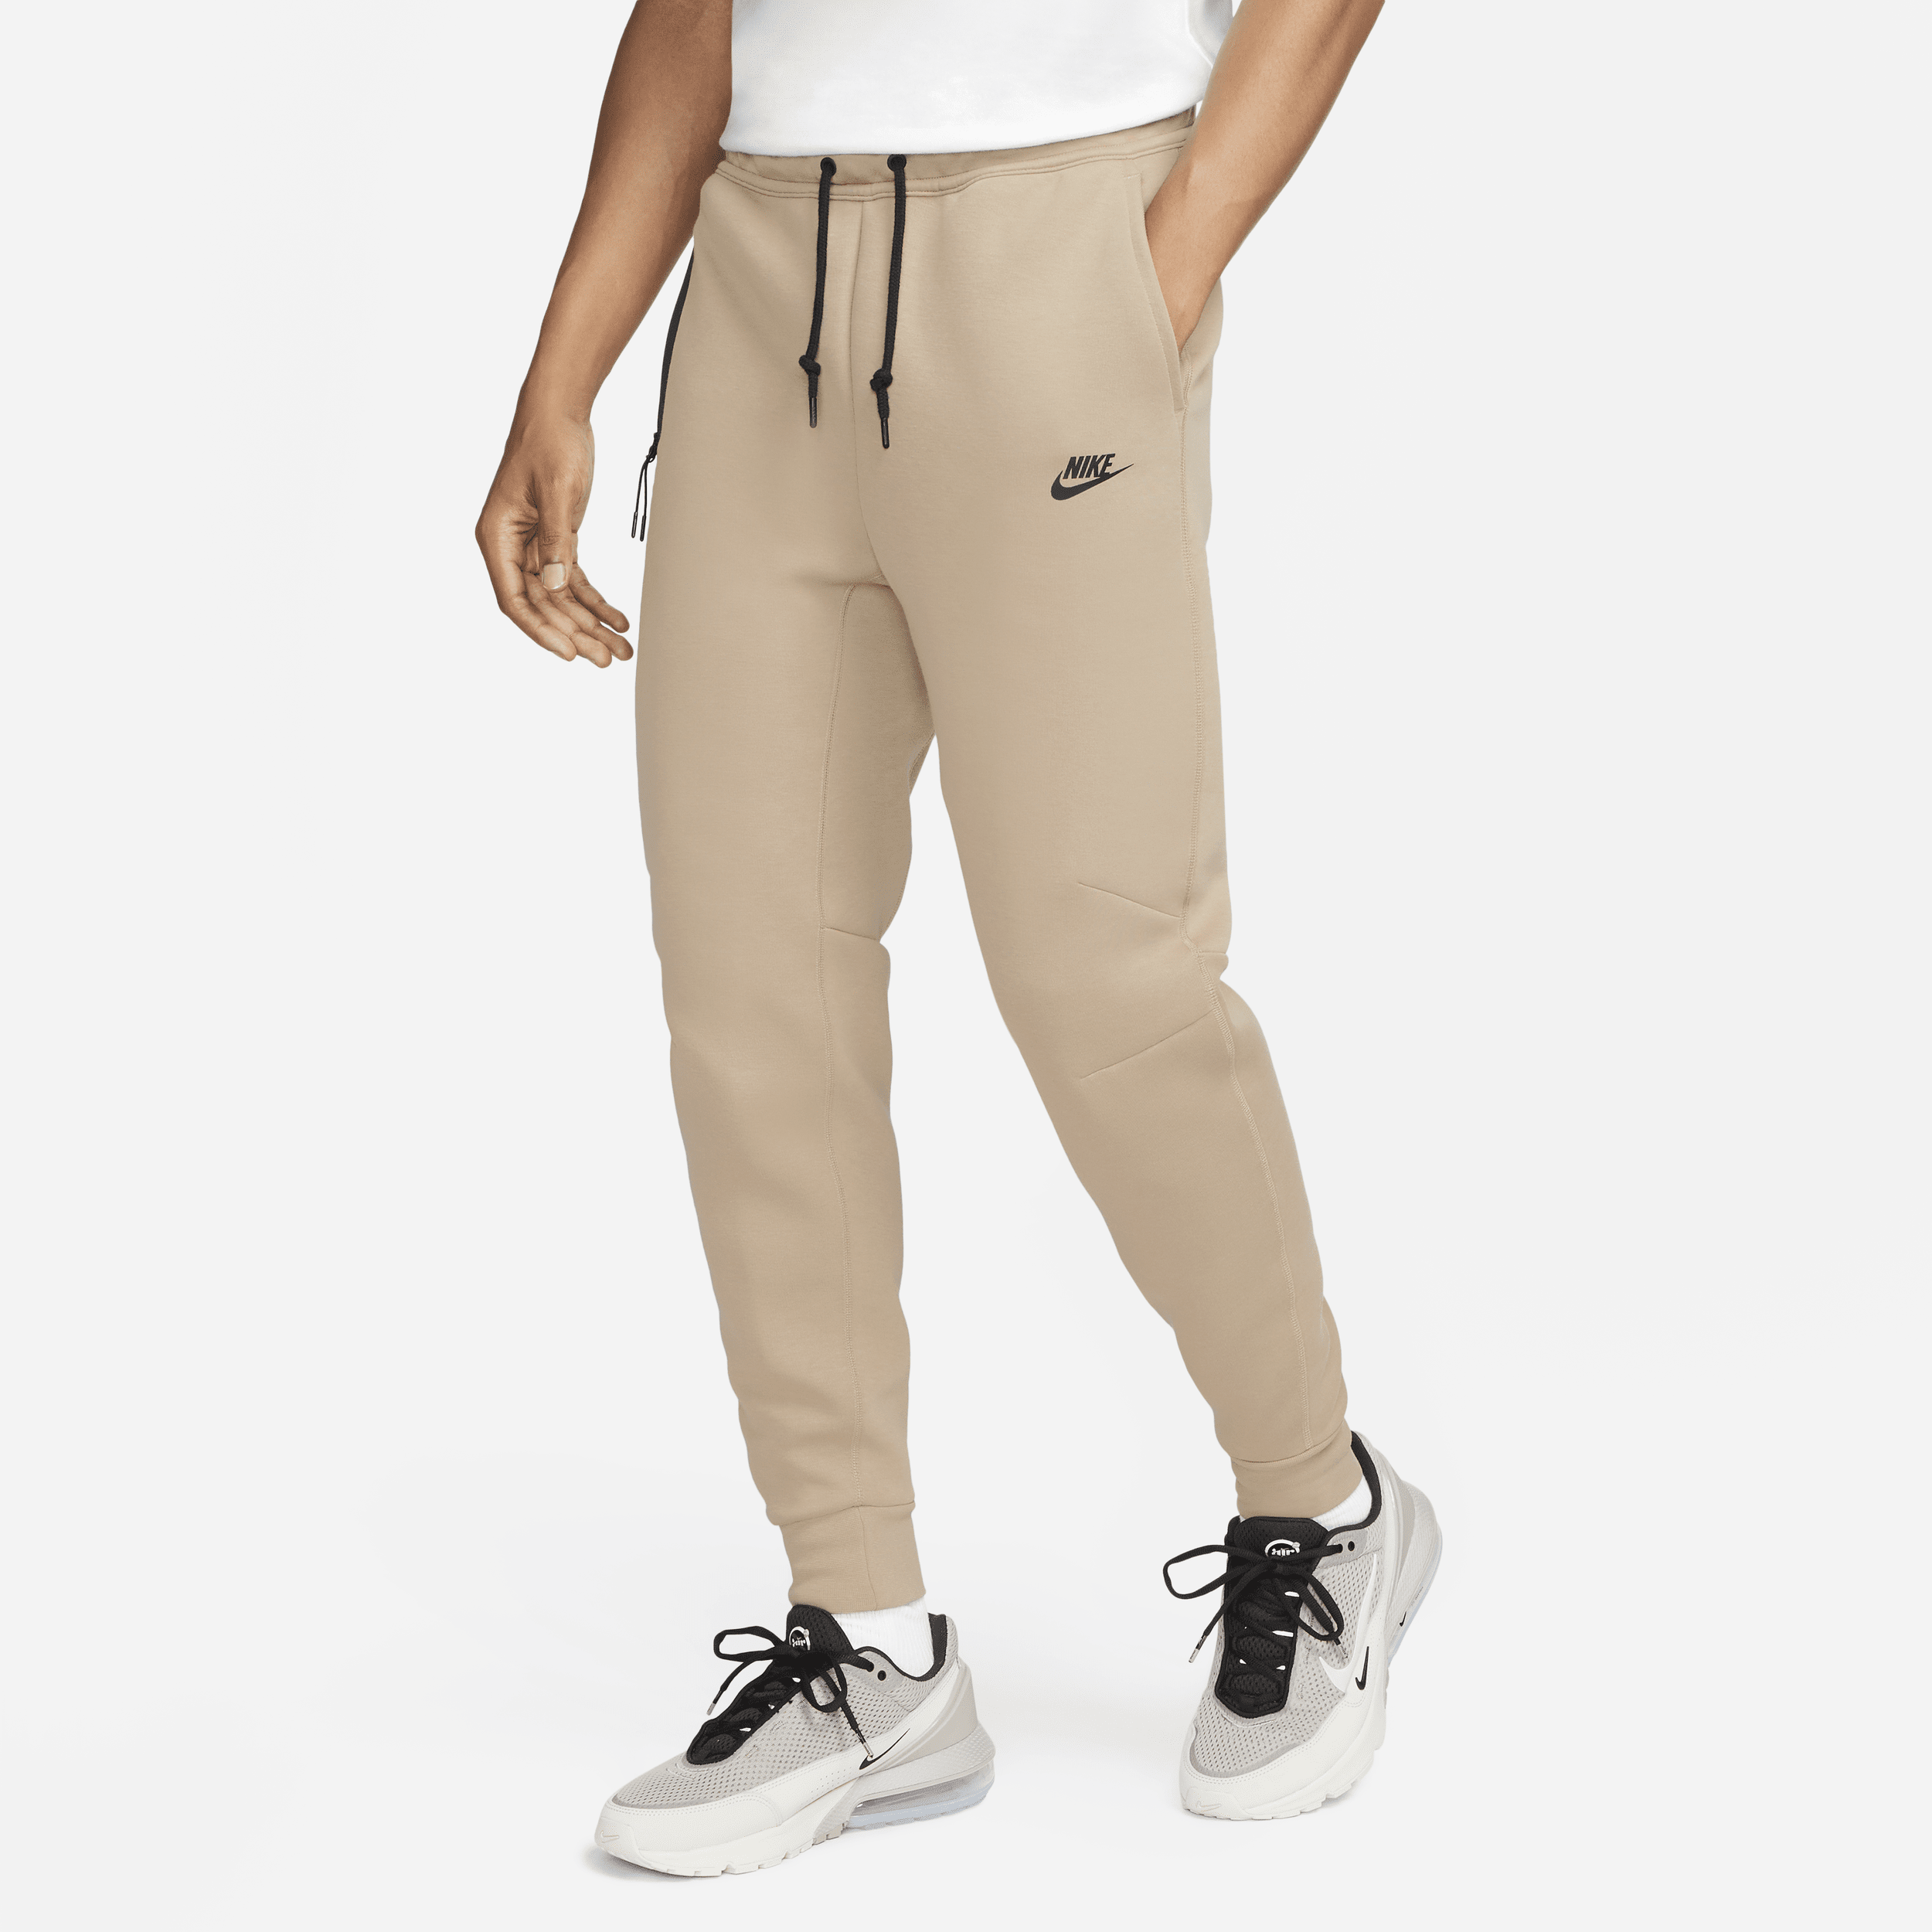 Pantaloni jogger Nike Sportswear Tech Fleece – Uomo - Marrone